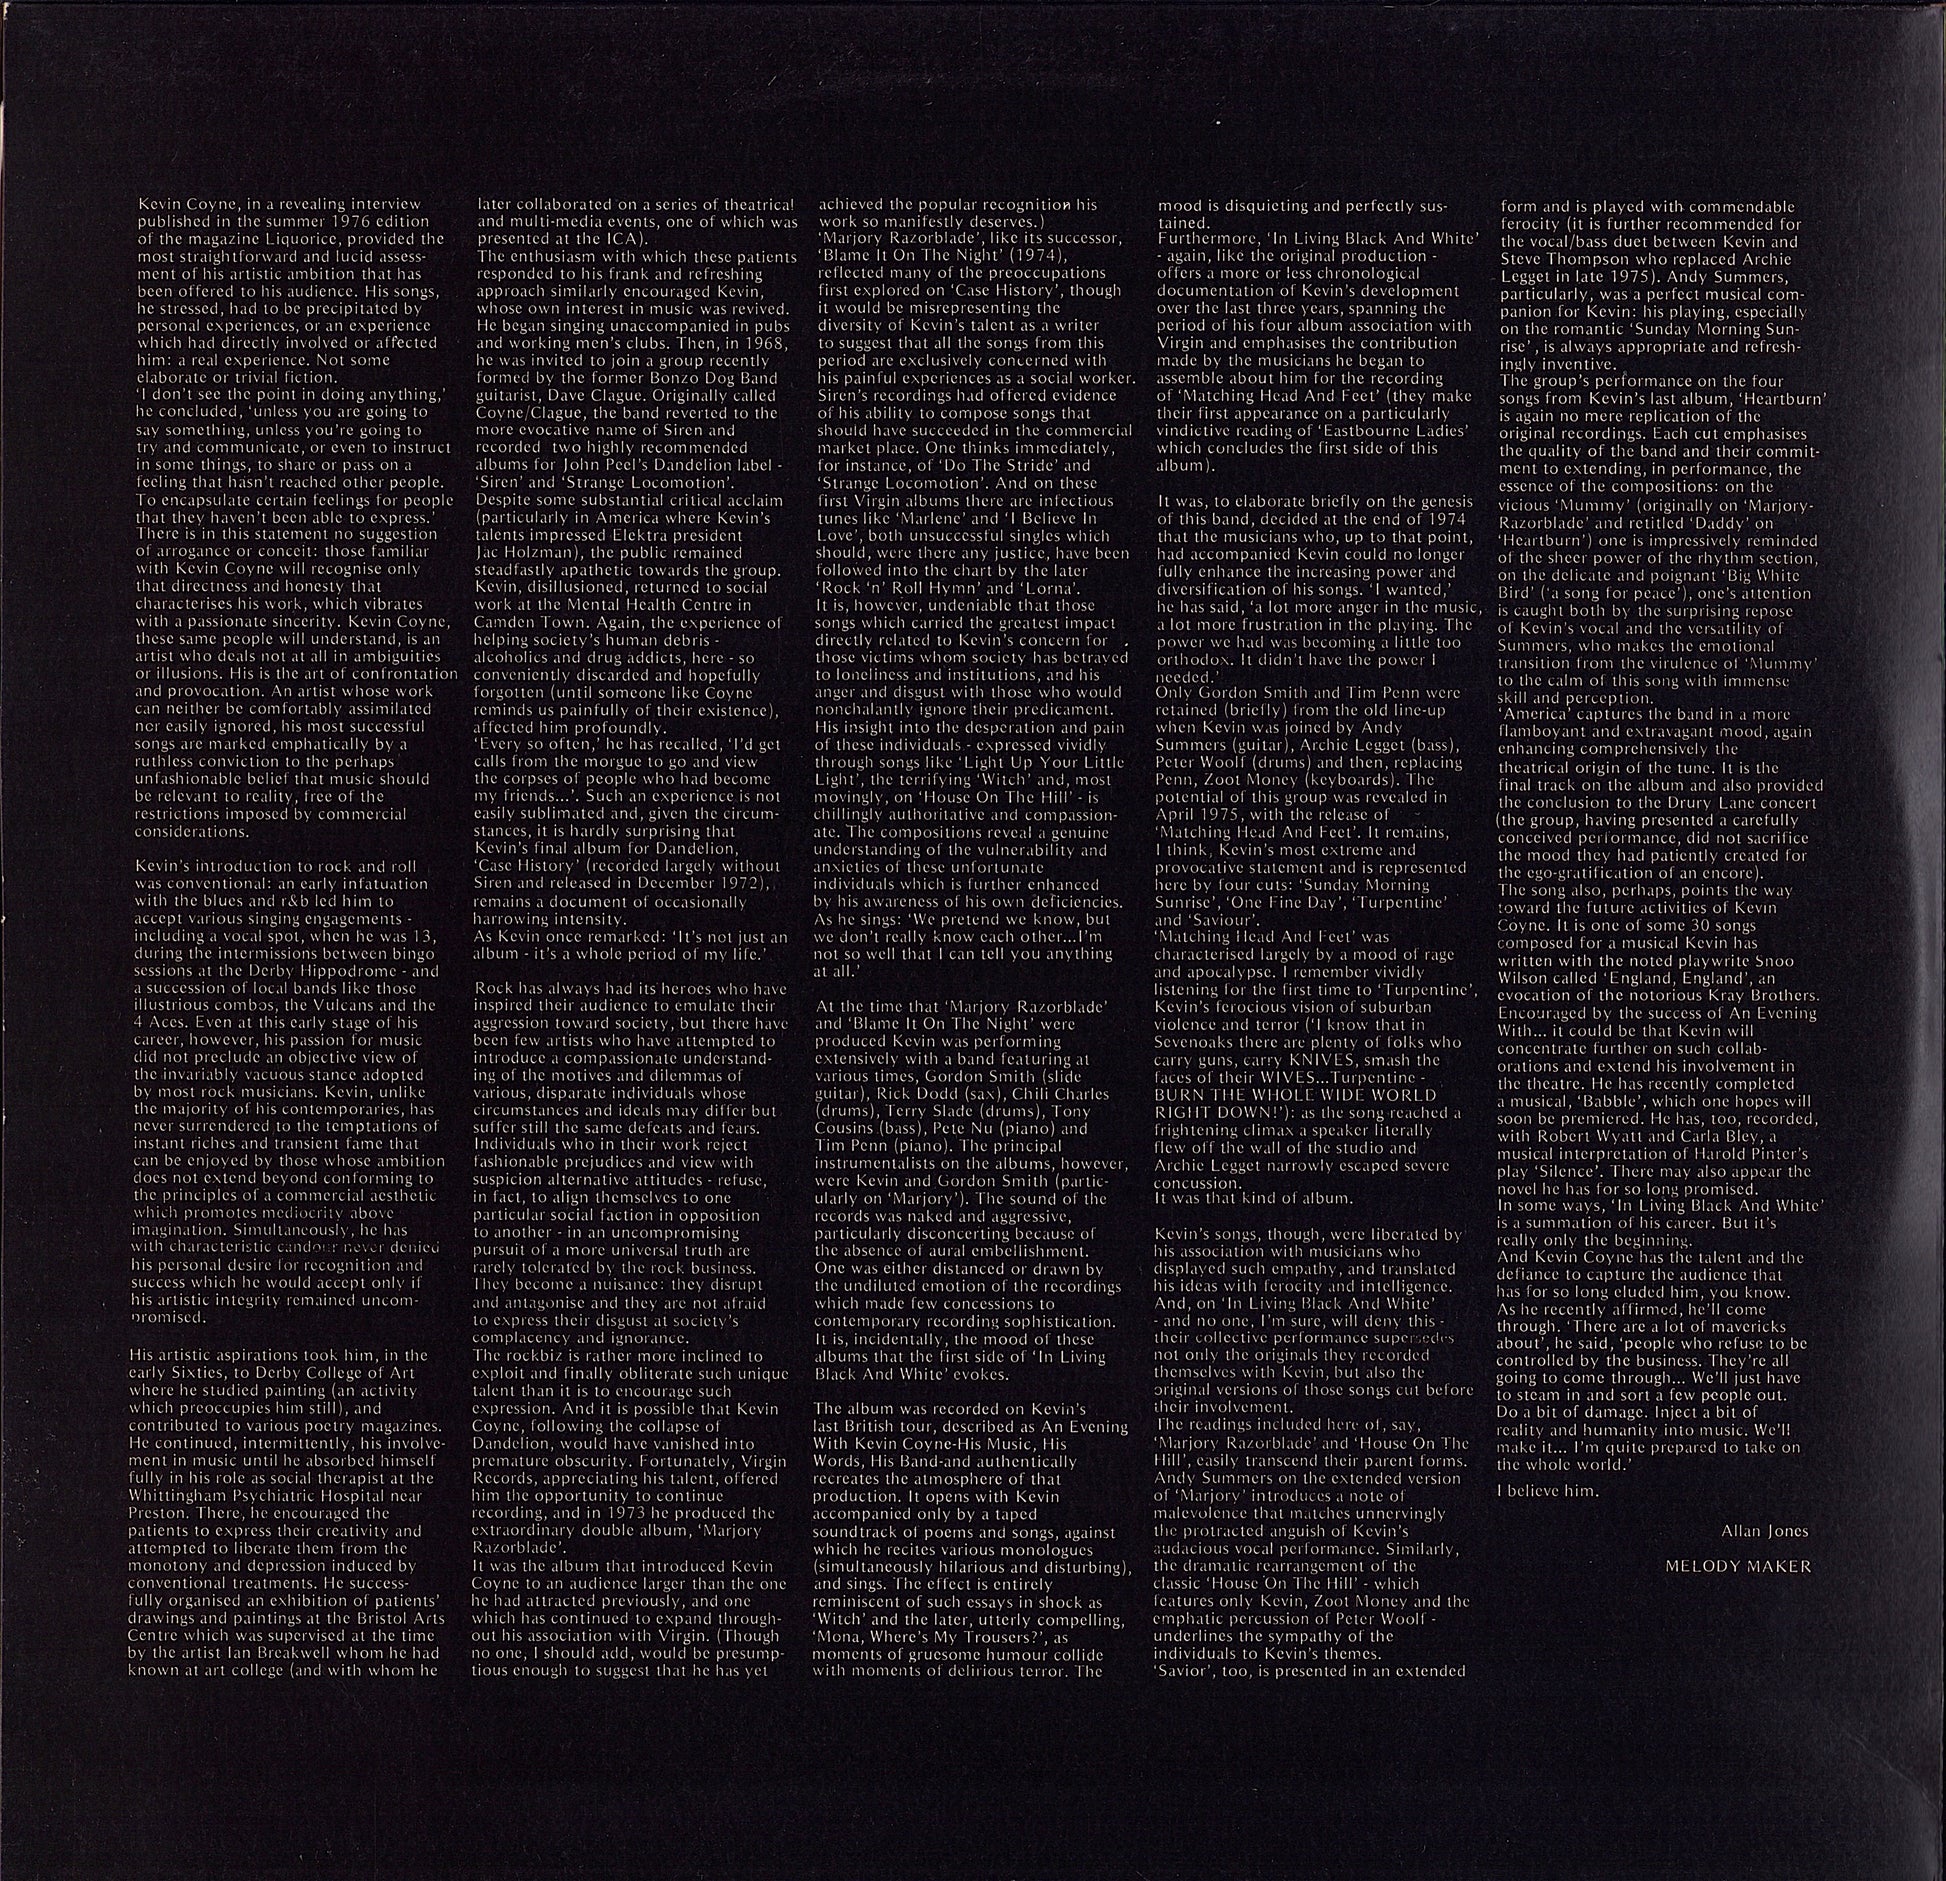 Kevin Coyne - In Living Black And White Vinyl LP UK